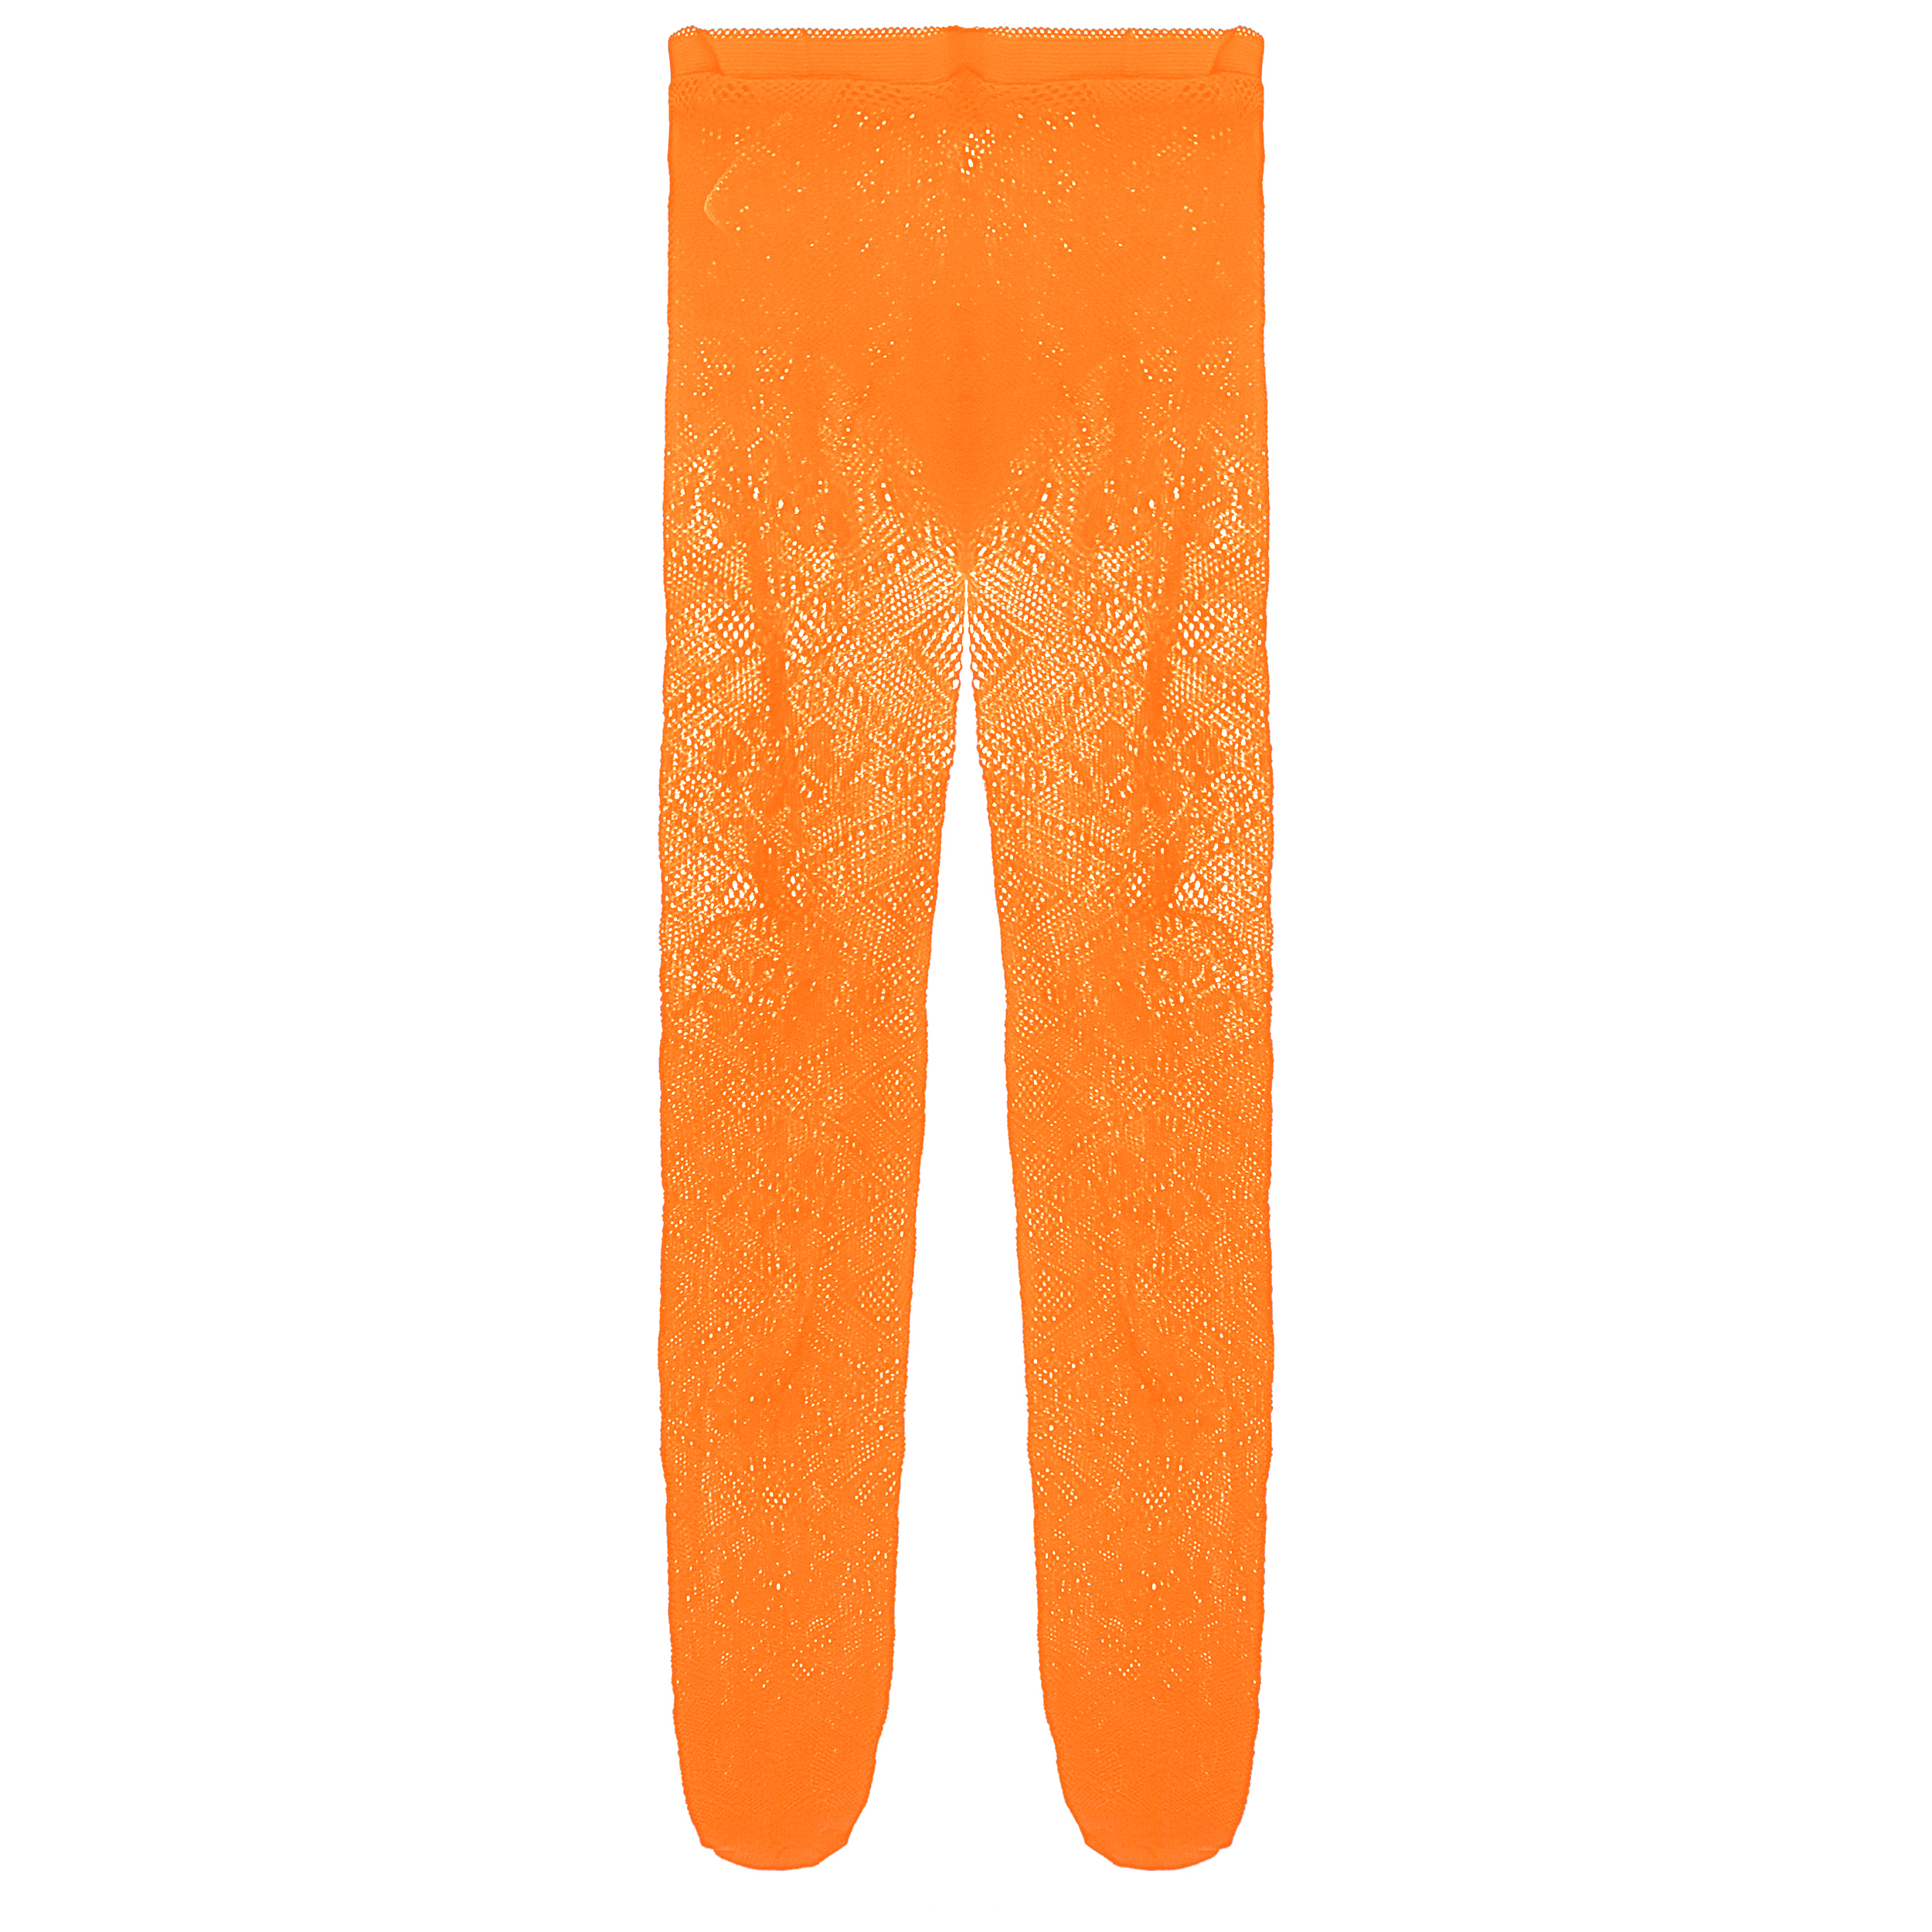 جوراب شلواری دخترانه مدل توری نرم کد AS1397 رنگ نارنجی